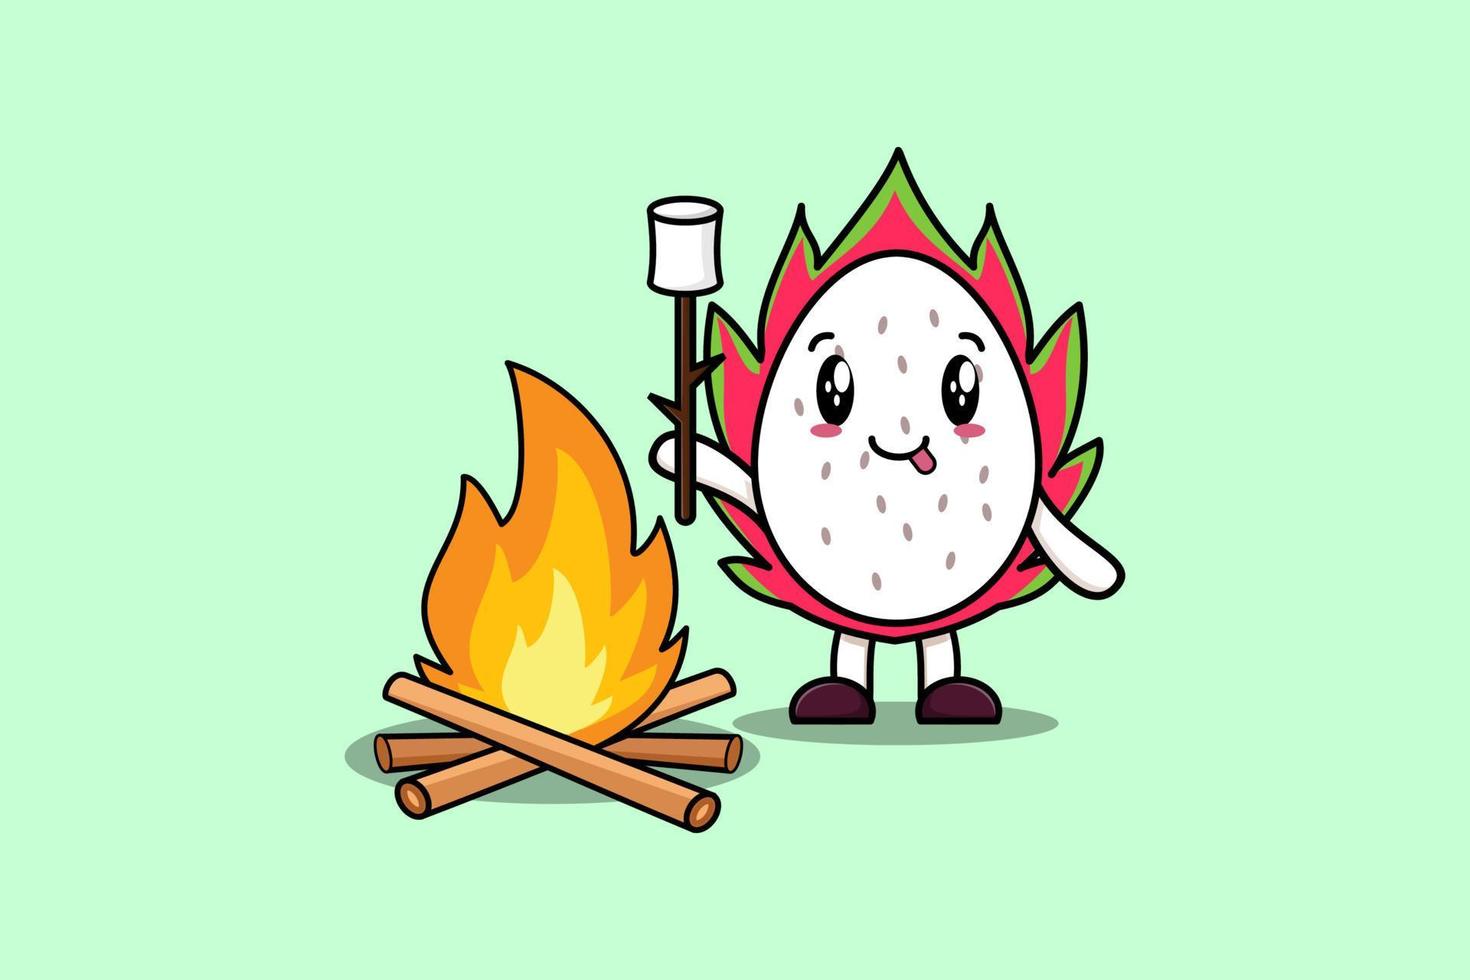 fruta do dragão bonito dos desenhos animados está queimando marshmallow vetor